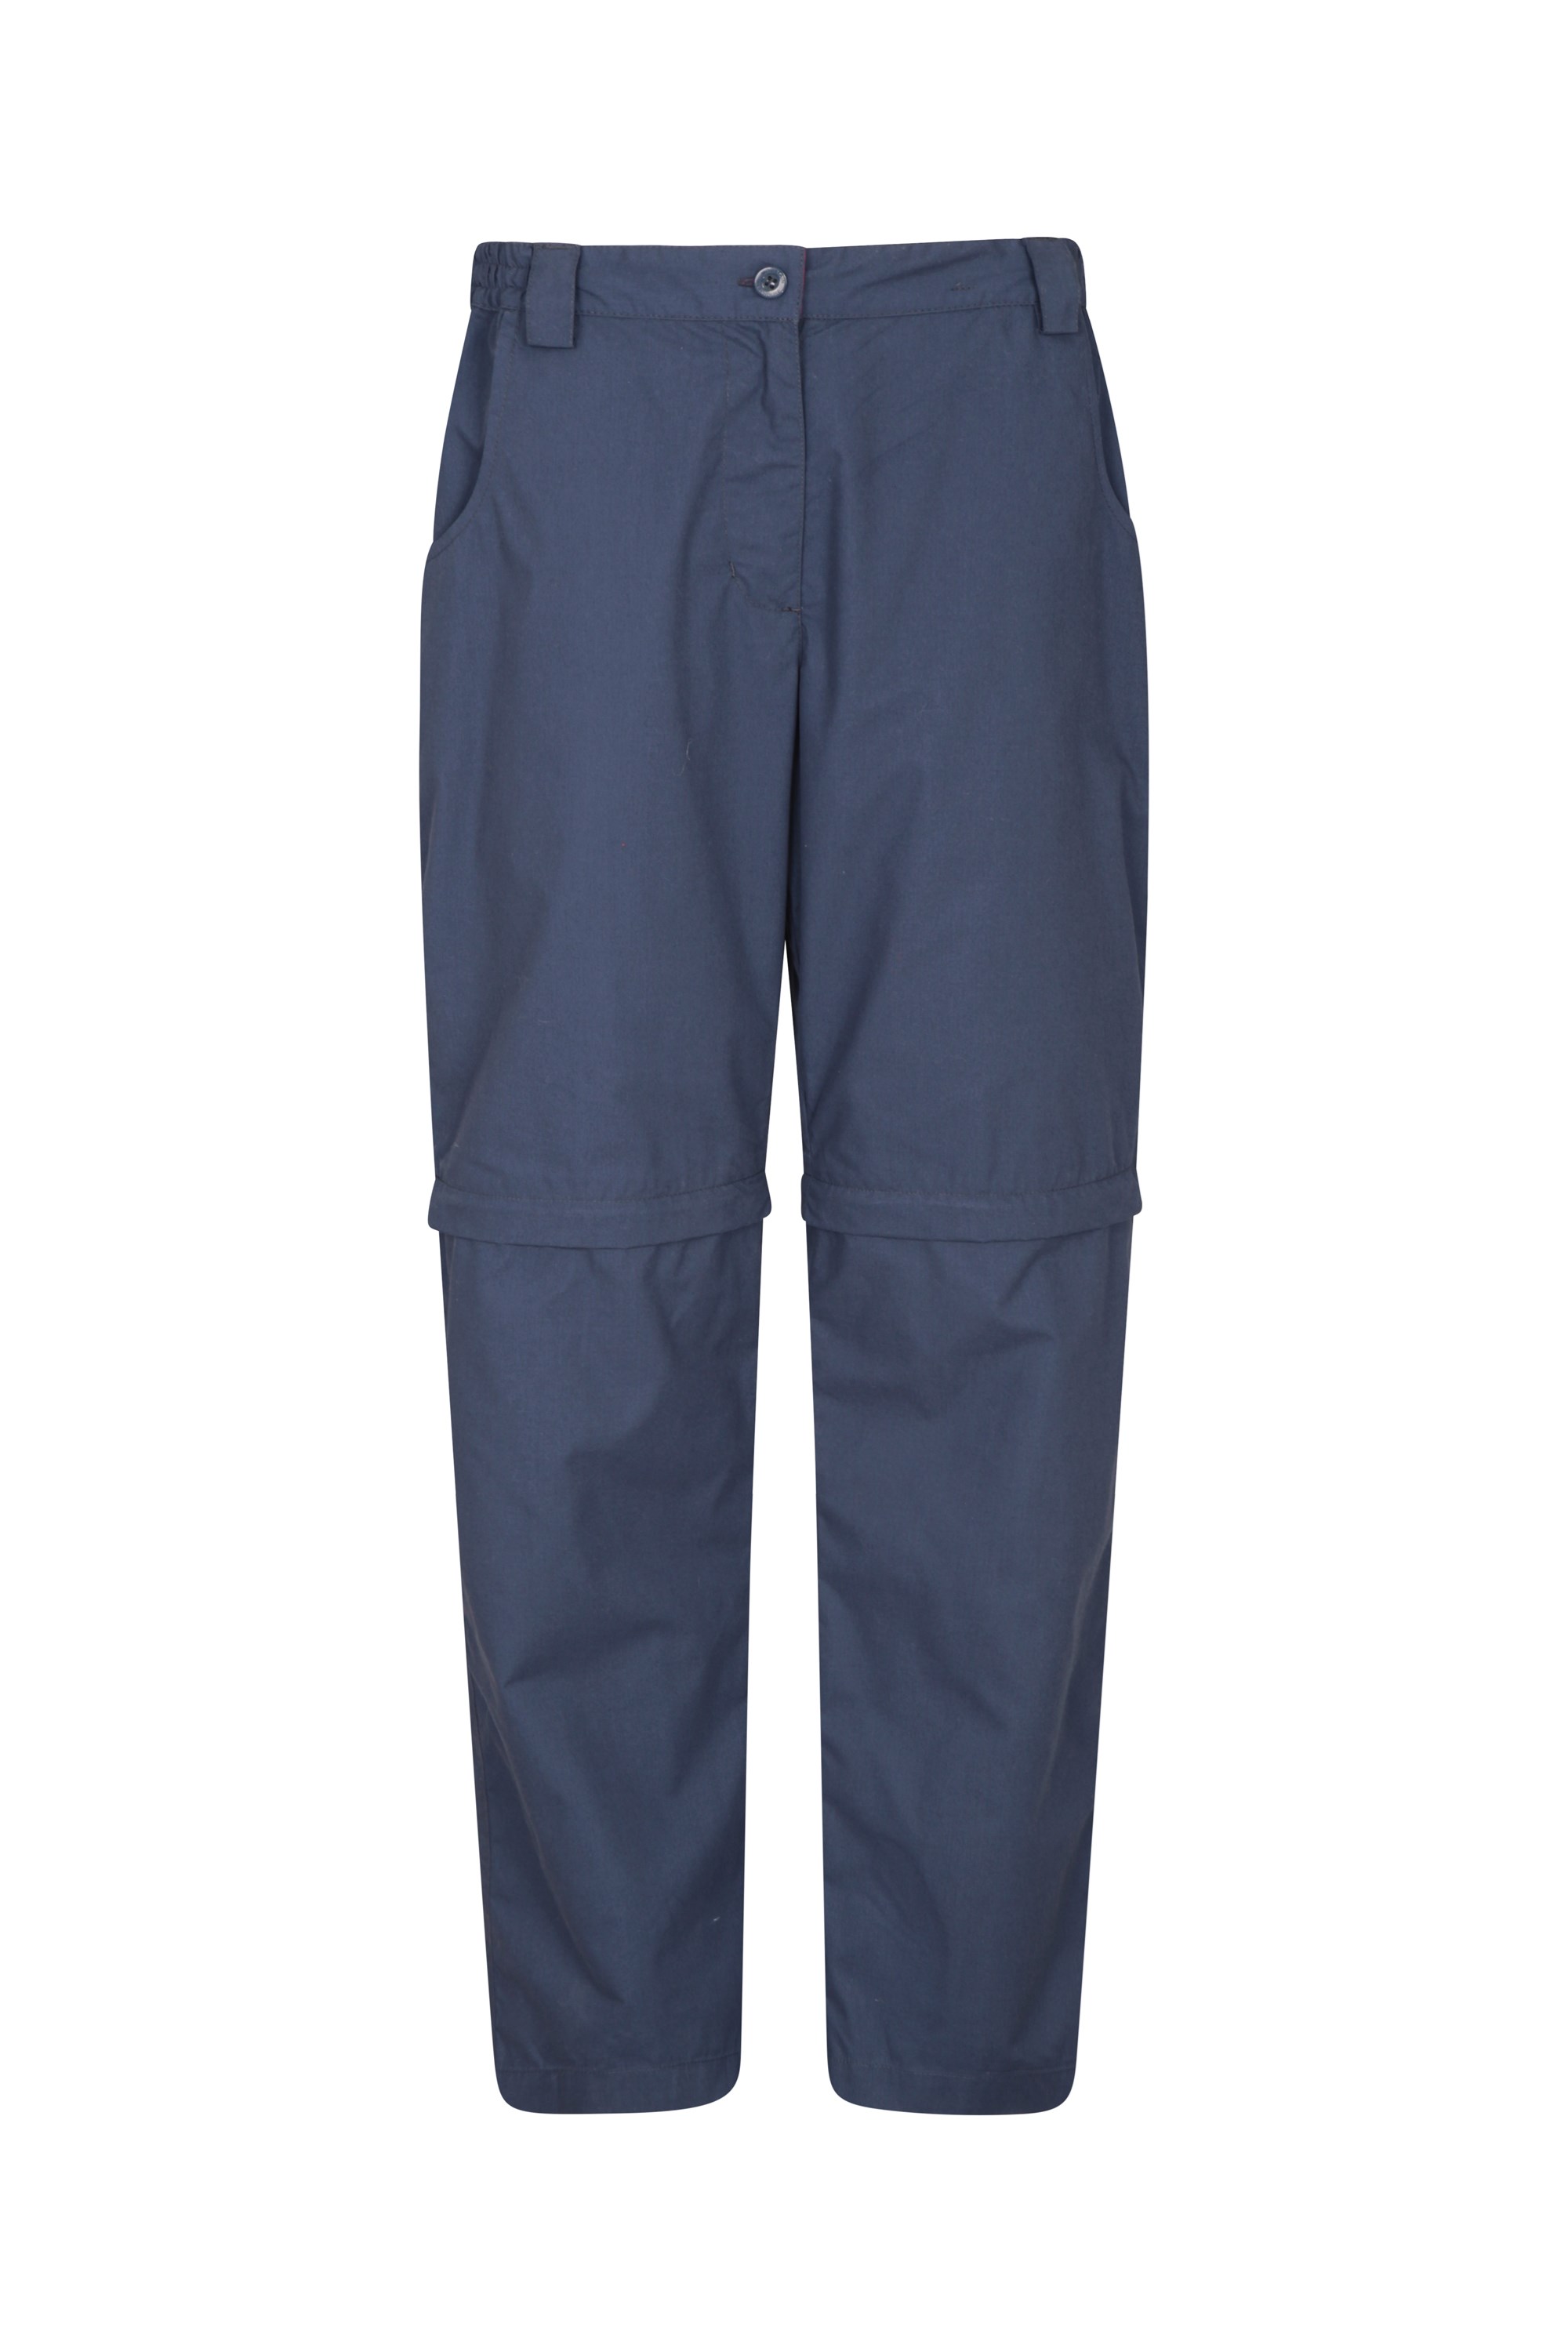 Pantalon Convertible Femmes Quest - Court - Bleu Marine